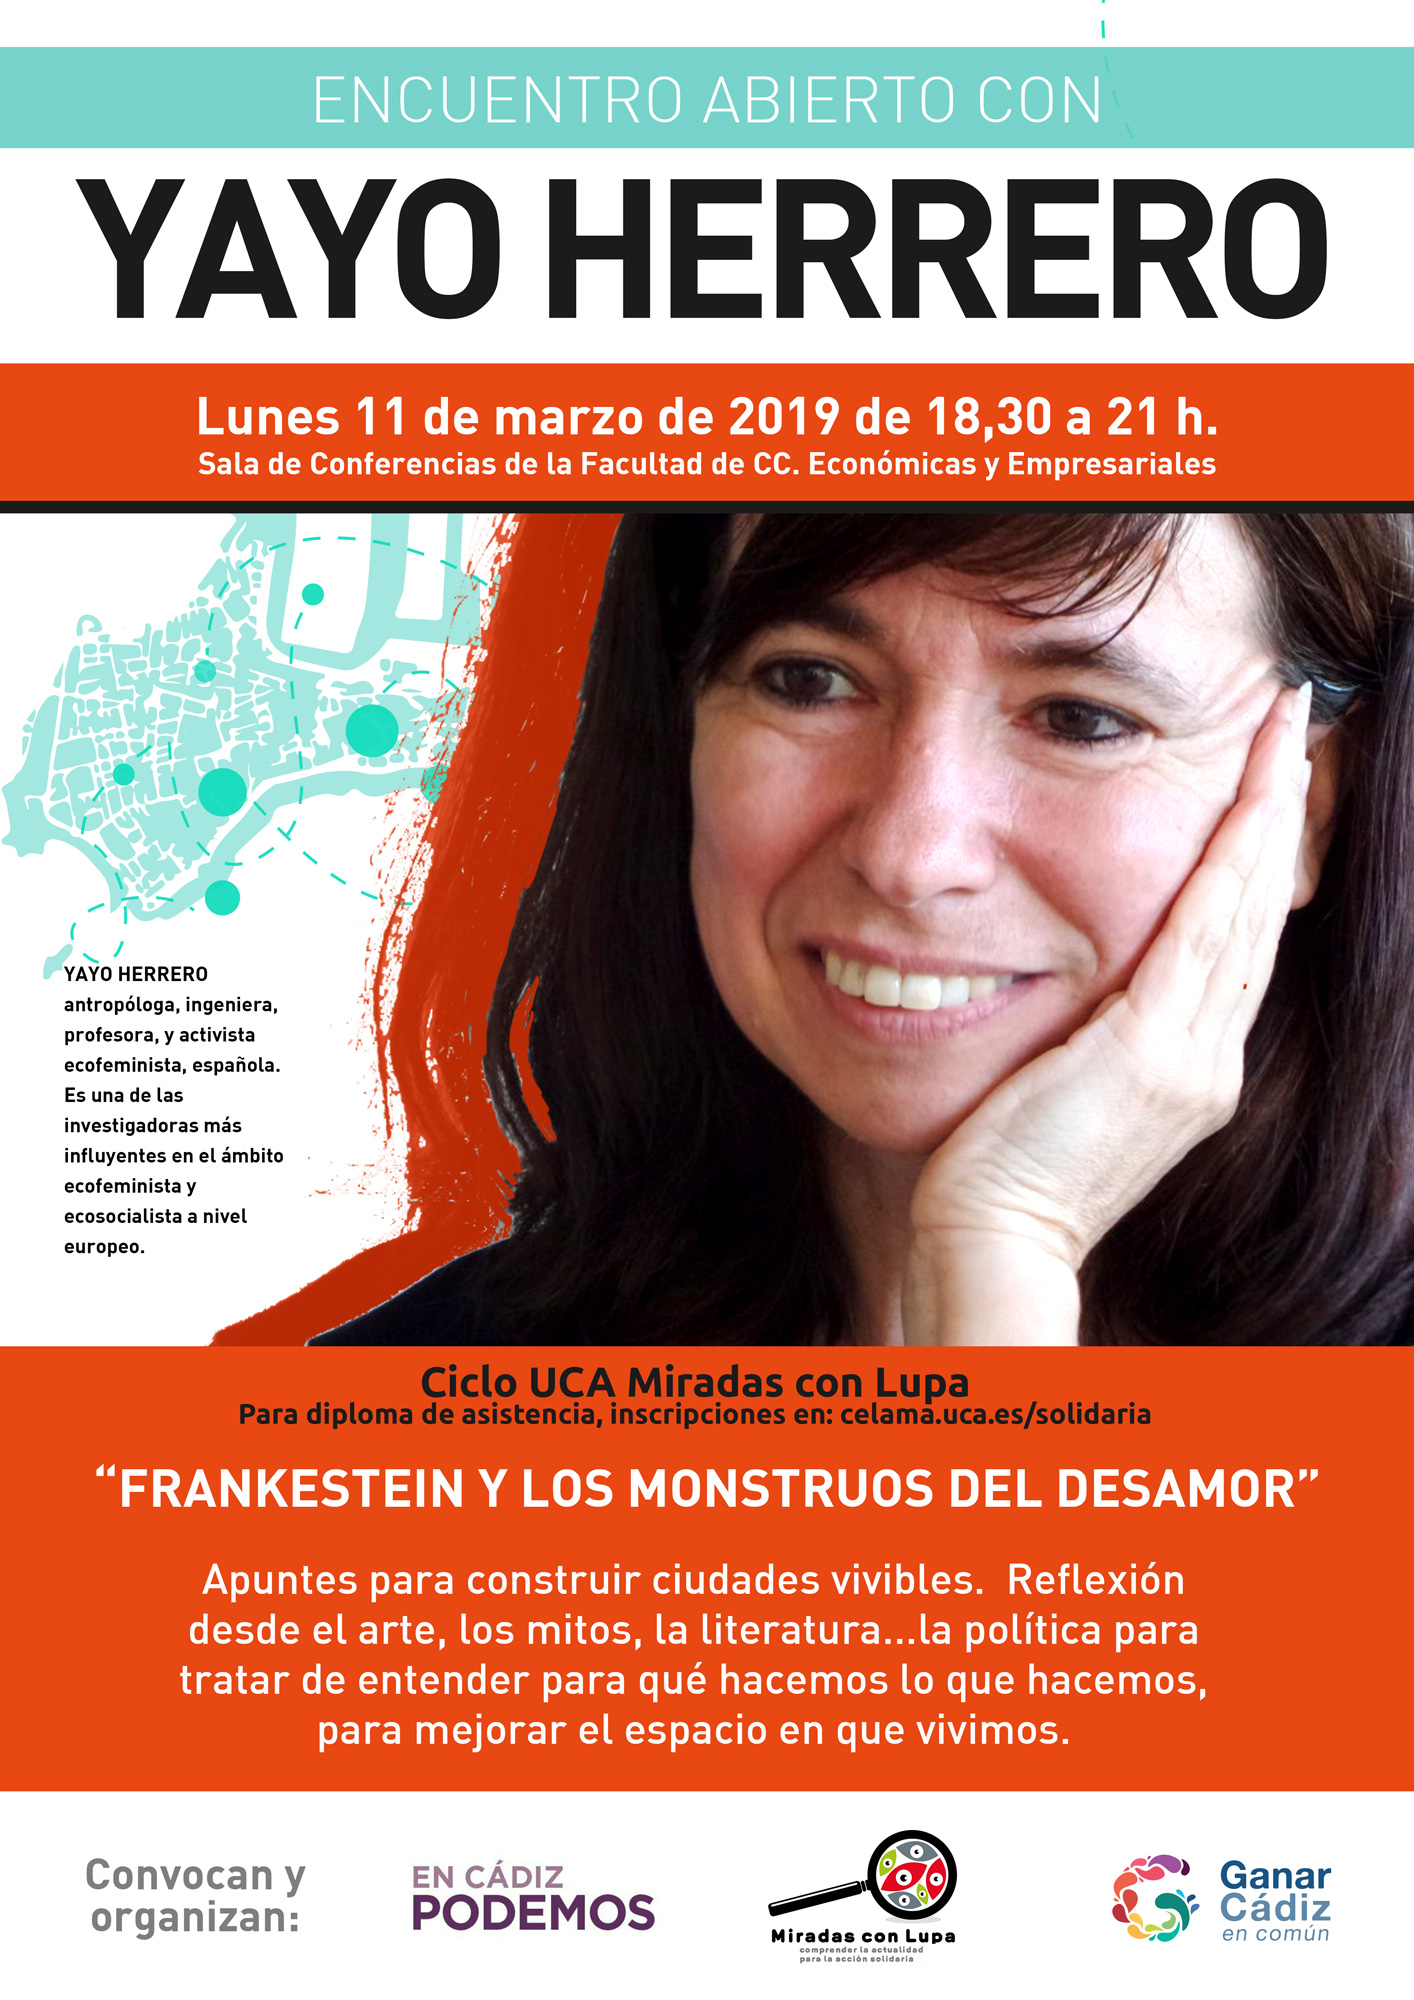 11 de Marzo. 18.30h. Conferencia de Yayo Herrero. Campus de Cádiz.